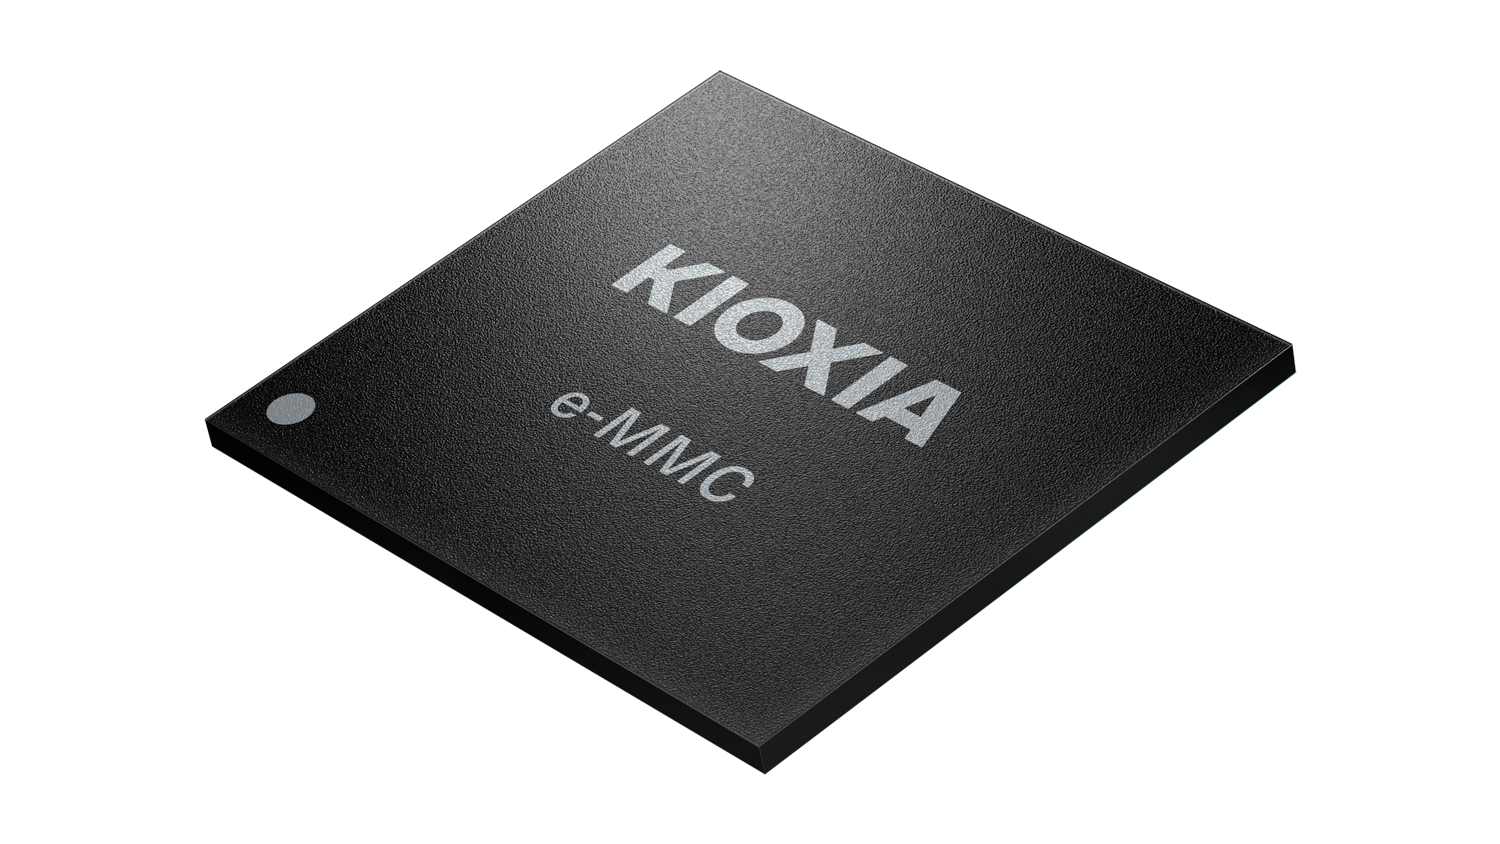 Kioxia Presenta Il Nuovo Storage Bics Flash 3d Emmc 51 Per I Dispositivi Intelligenti Di 3047